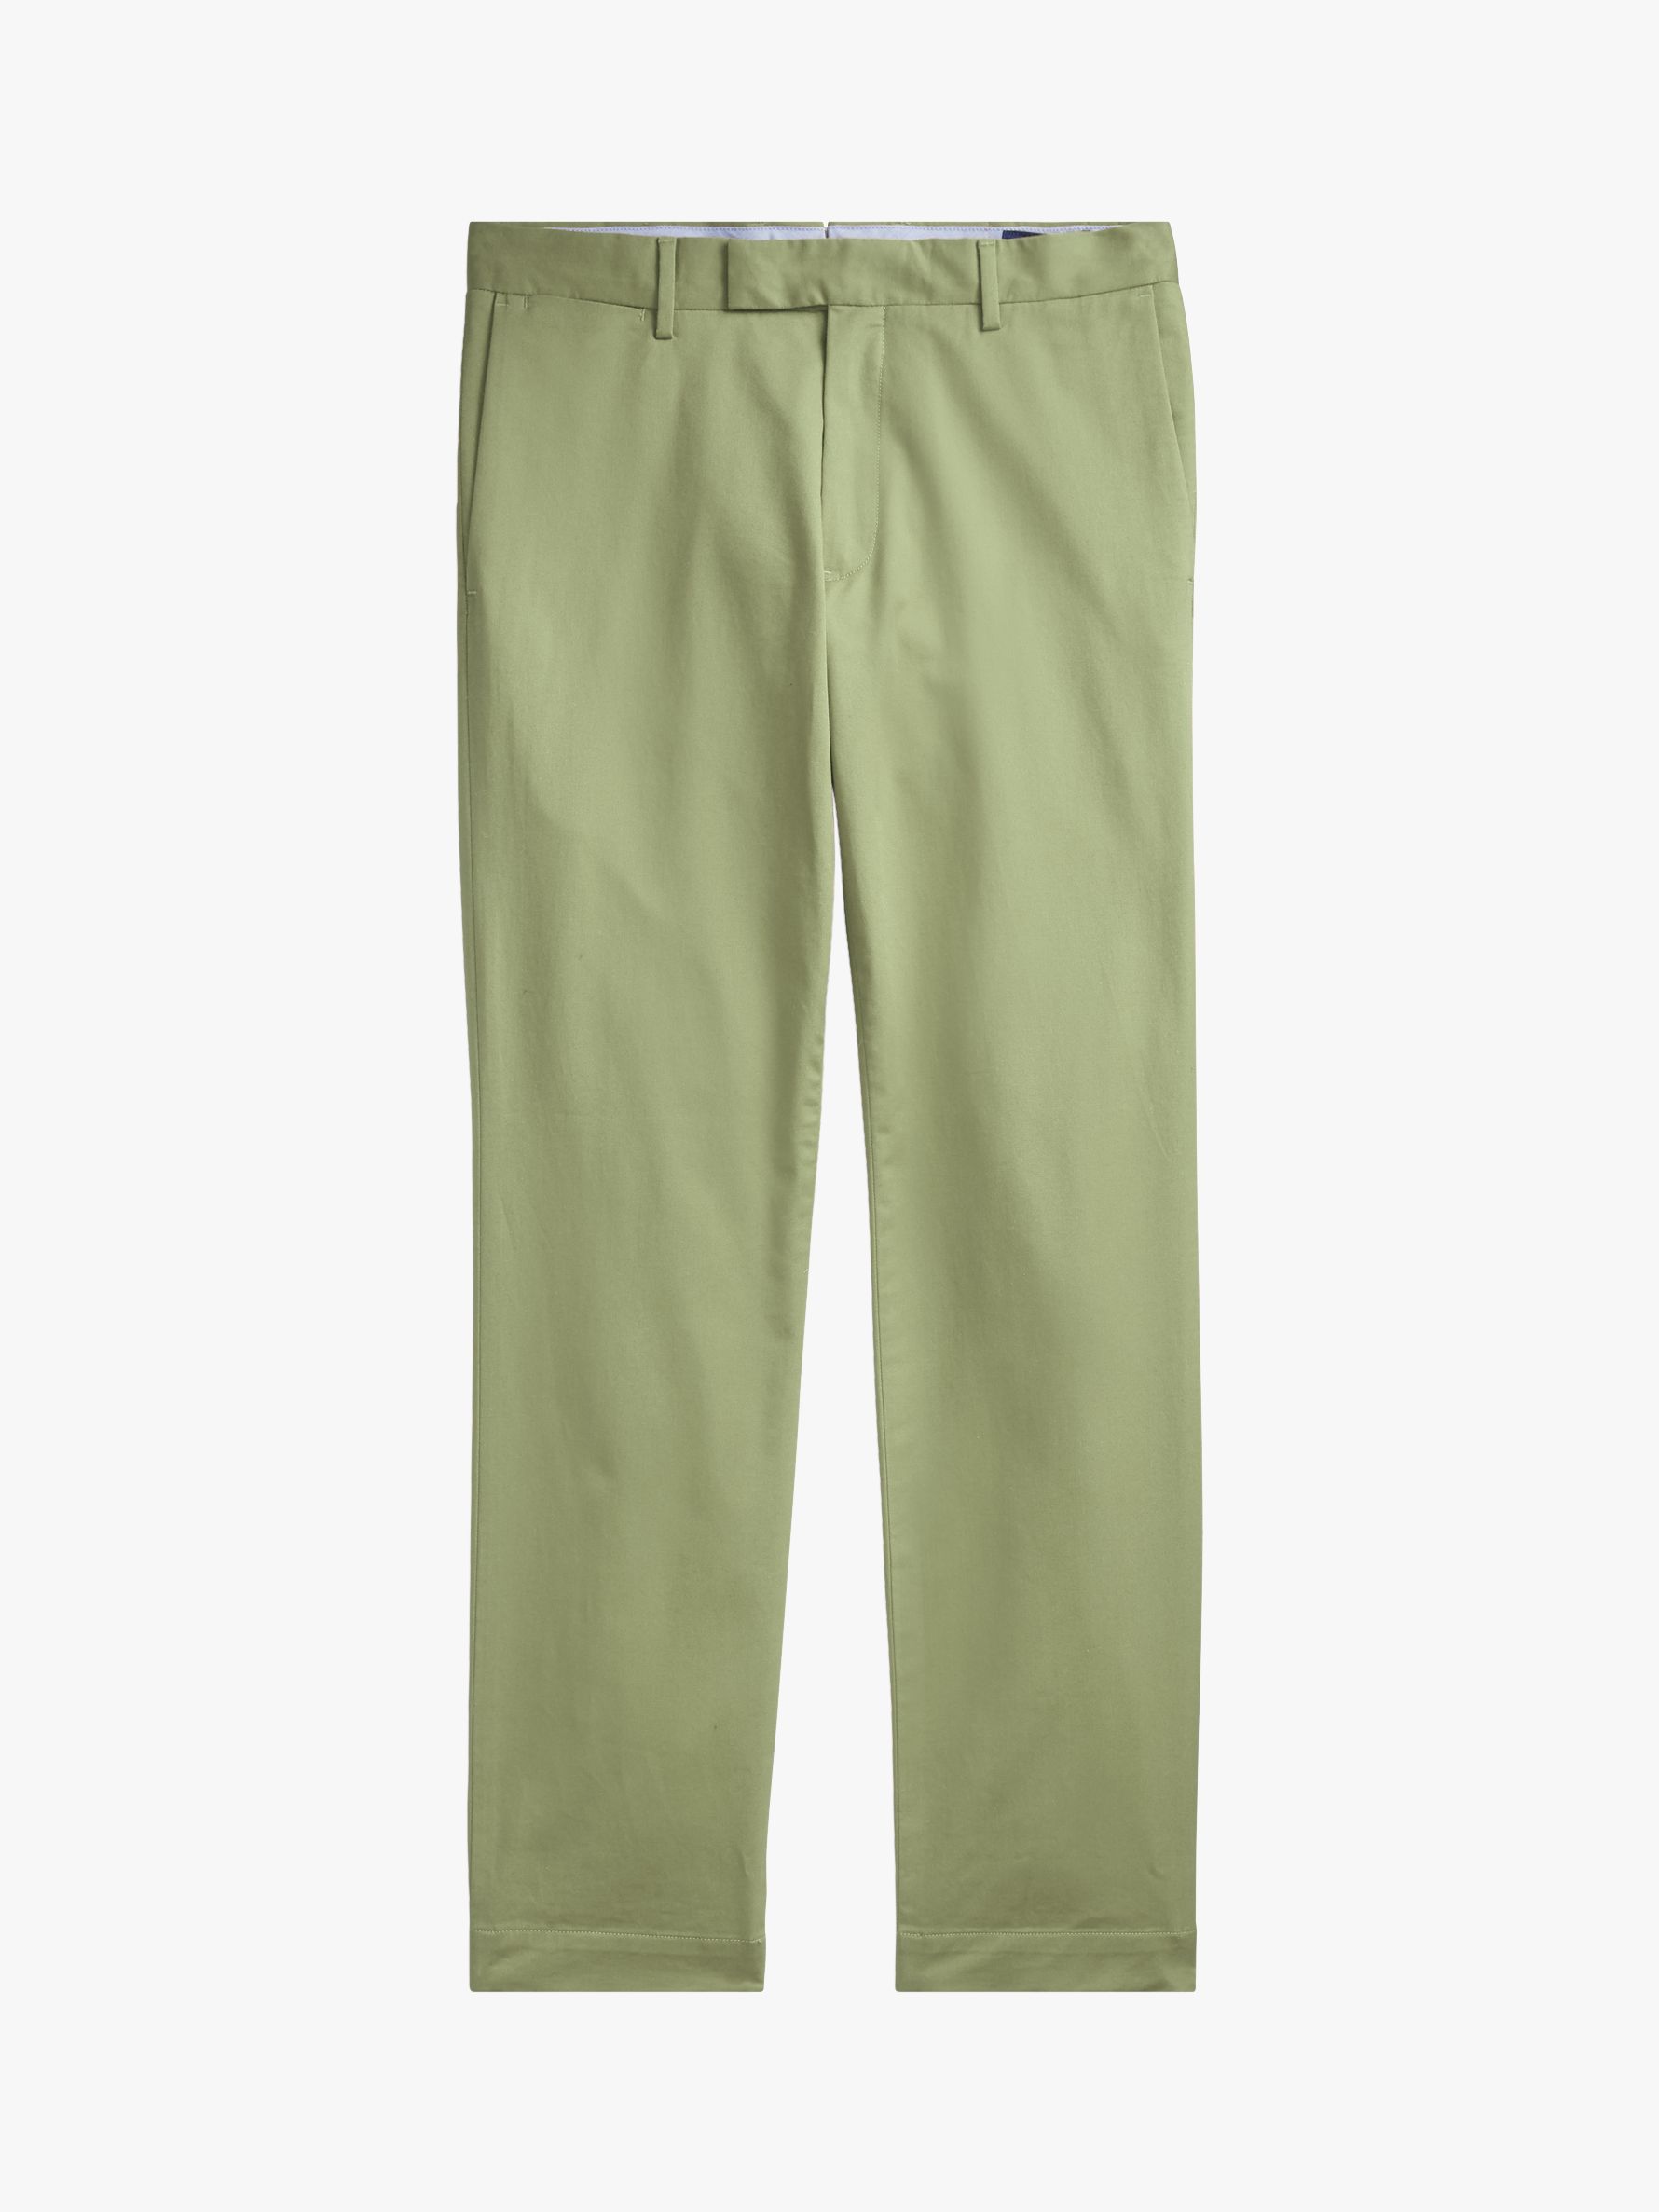 ralph lauren green trousers